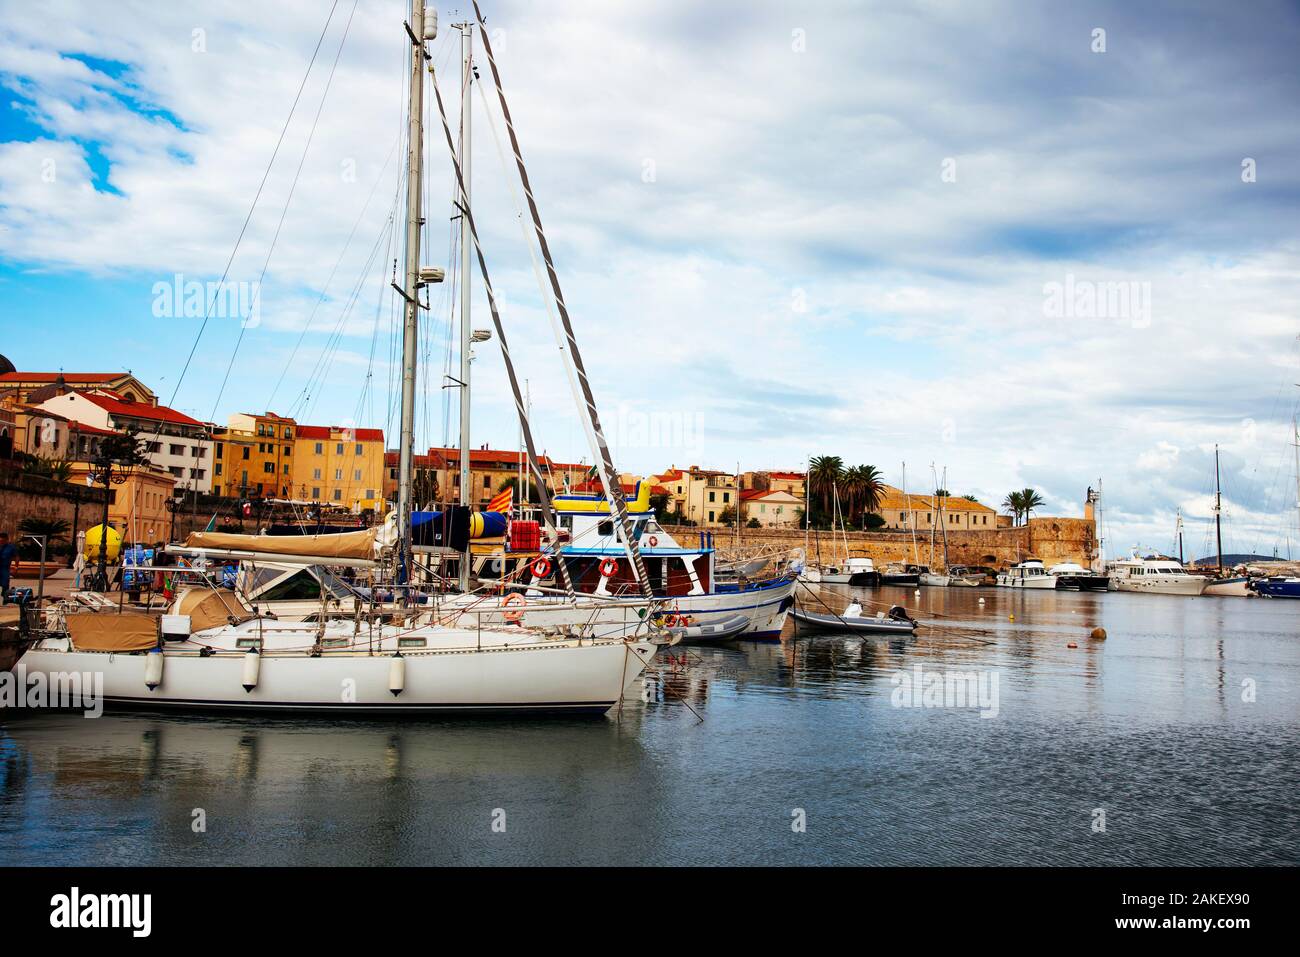 ALGHERO, Italia - 18 settembre 2017: una vista sul porto di Alghero, Sardegna, Italia, accanto alle mura del centro storico, la città vecchia della cit Foto Stock